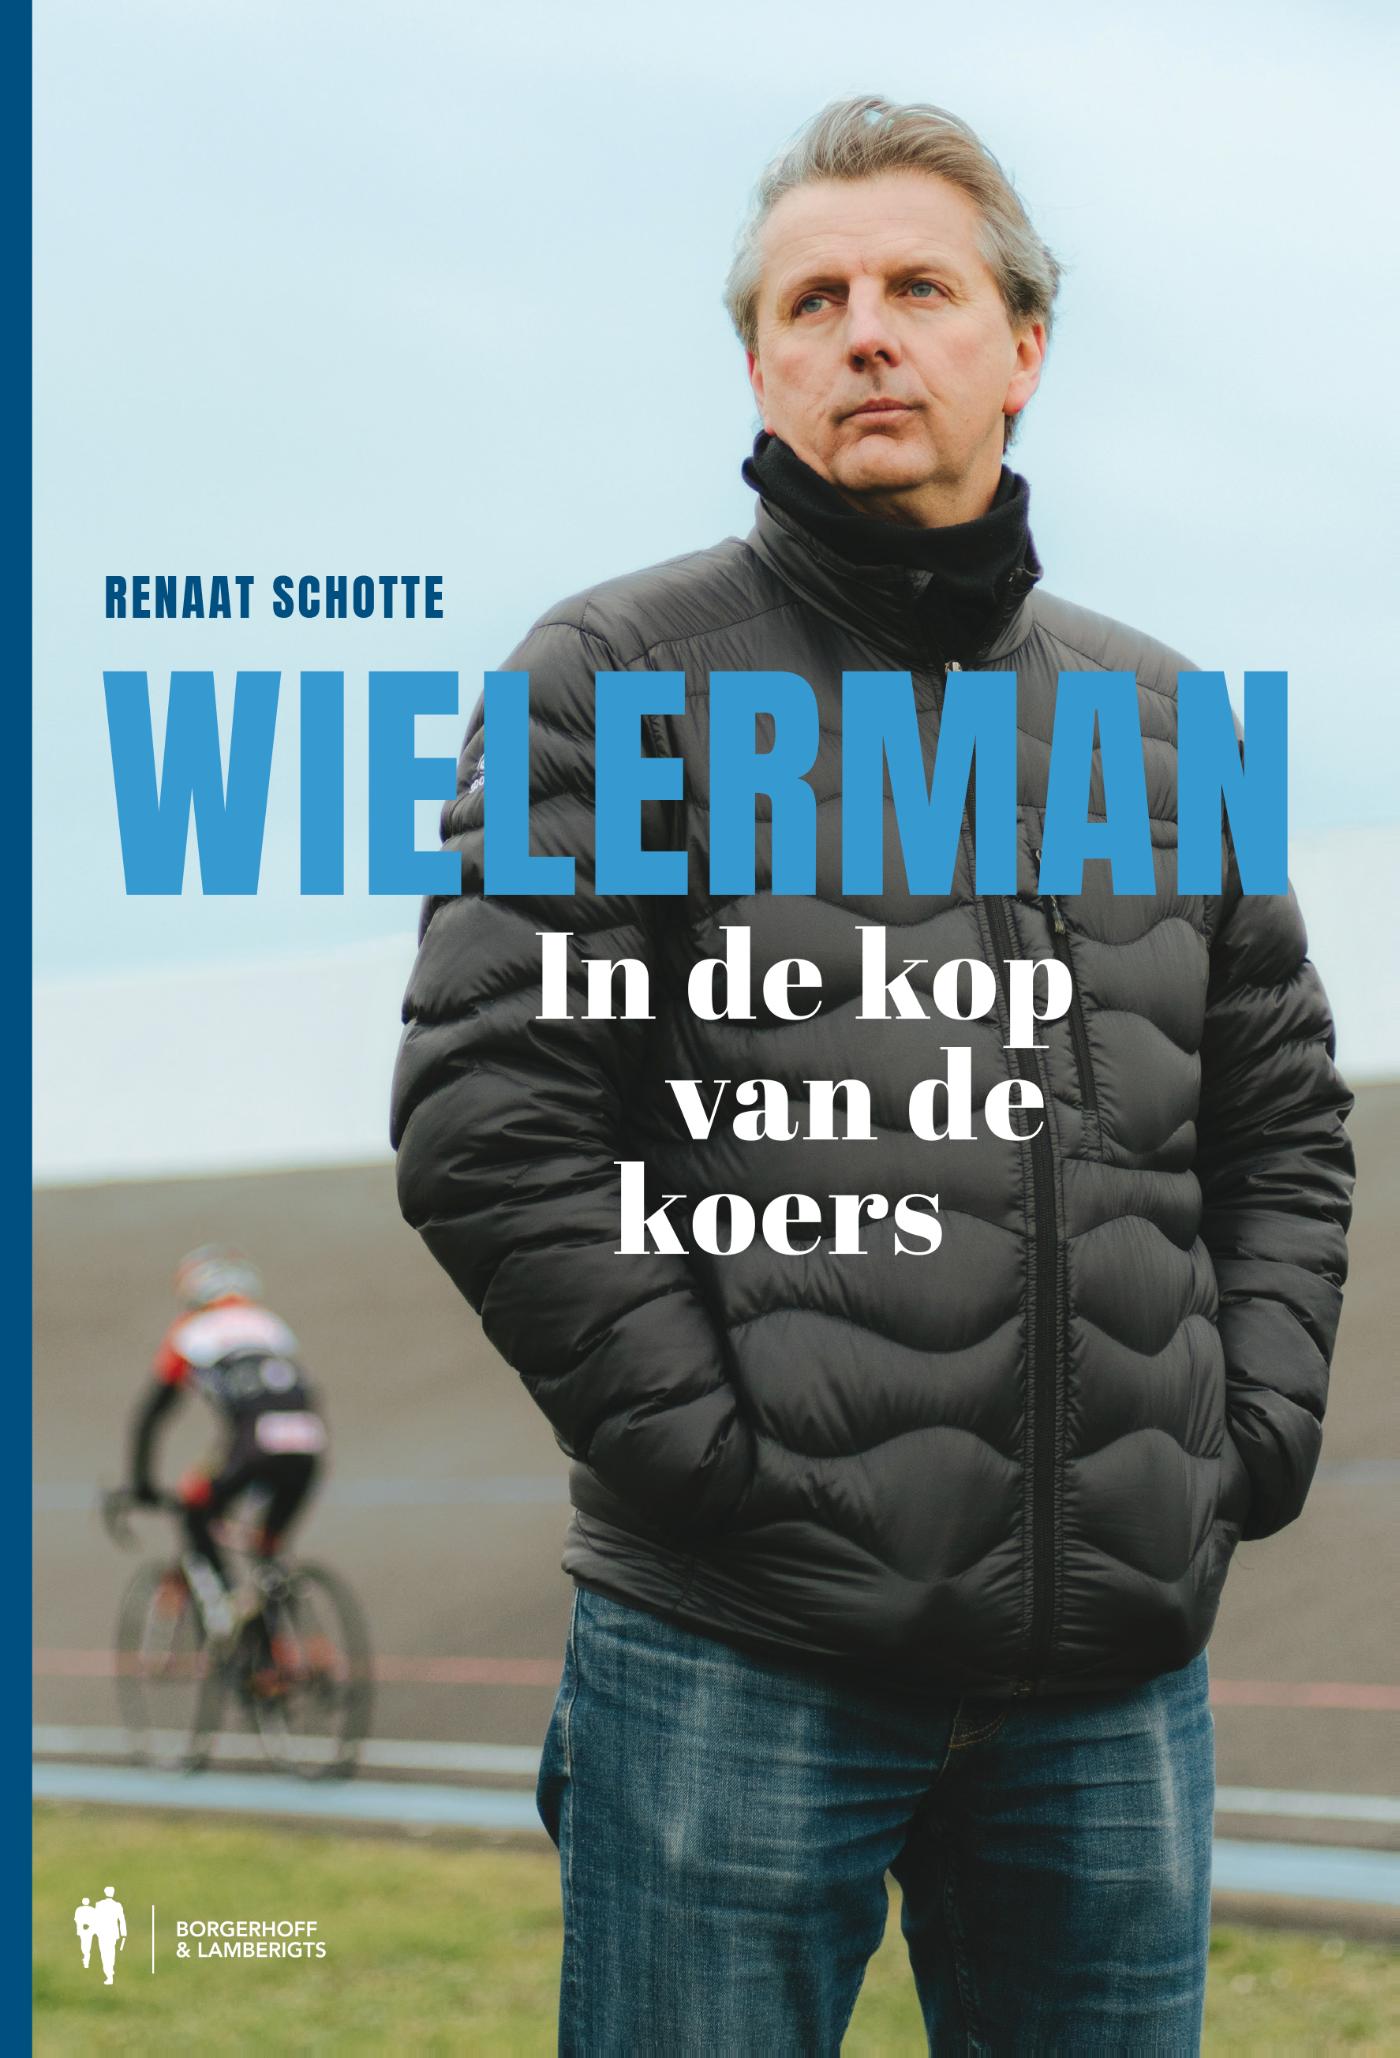 Wielerman (Ebook)